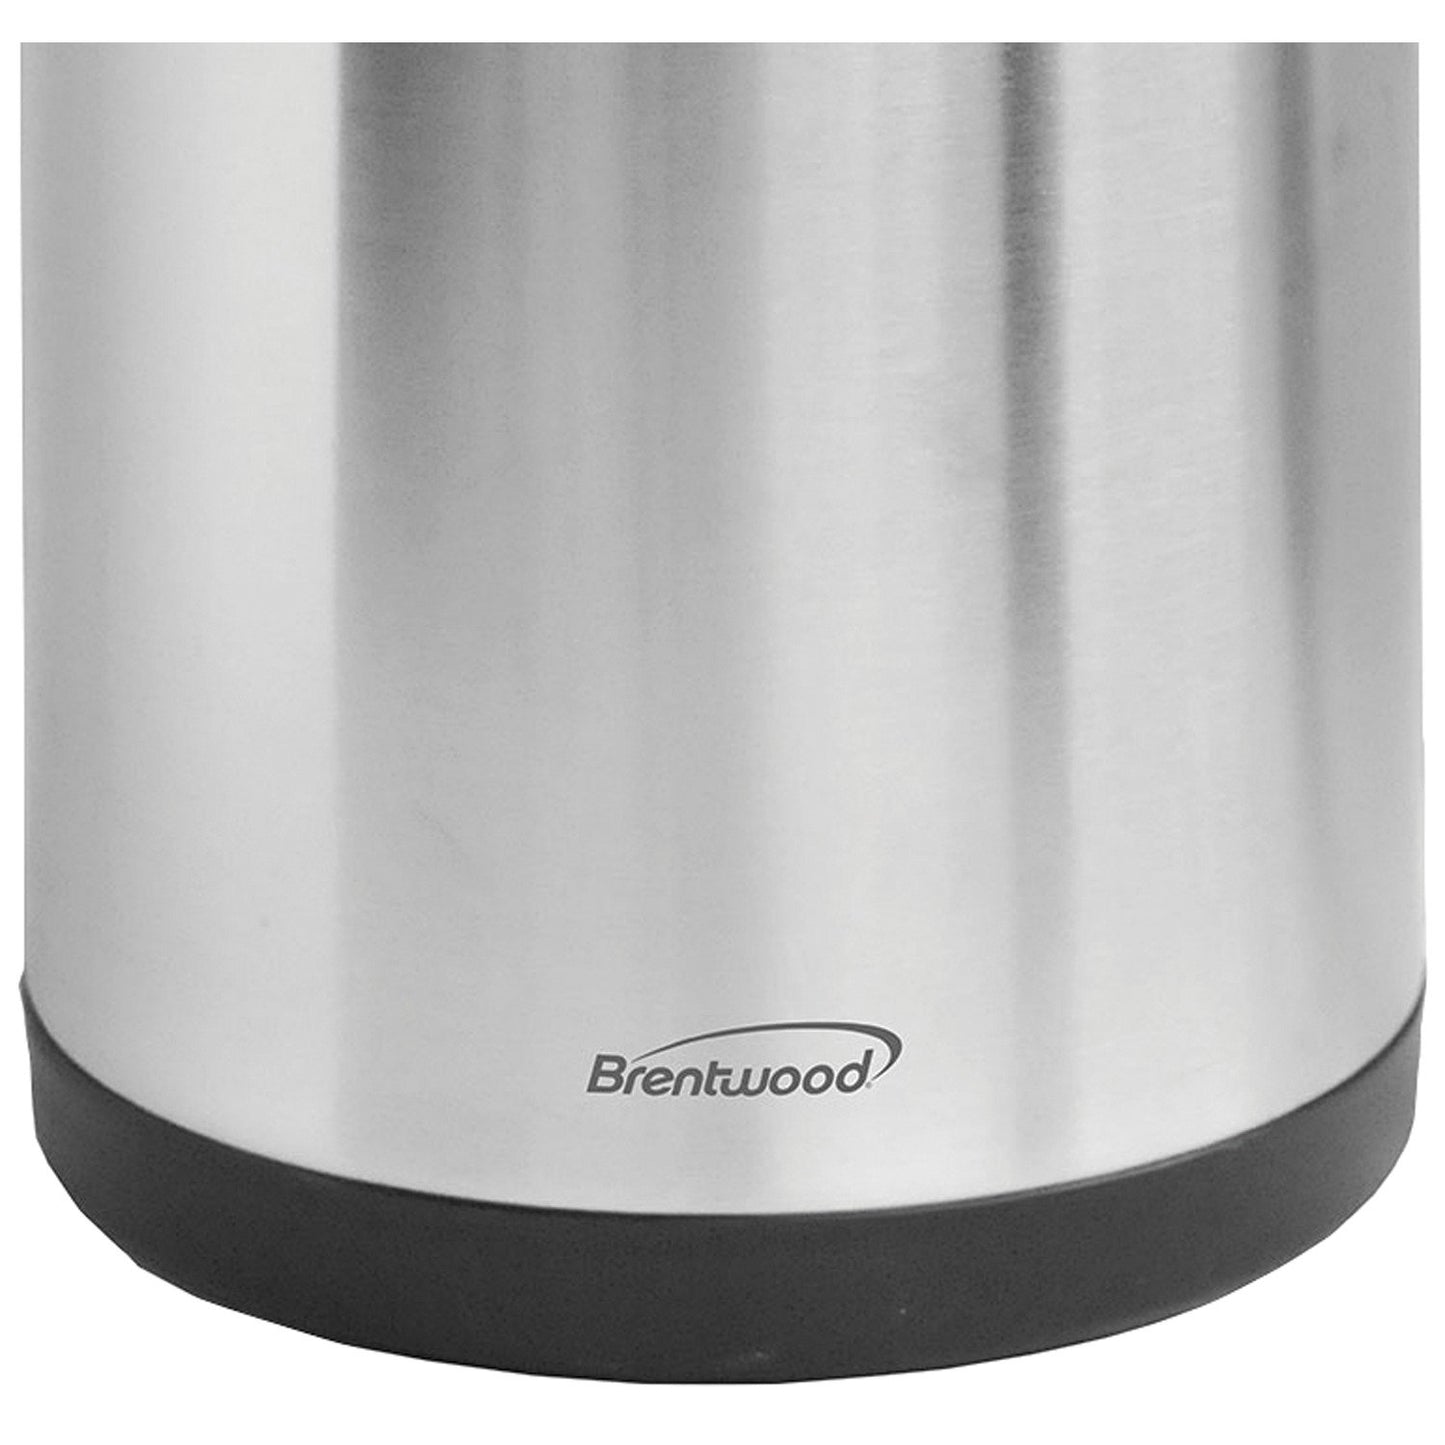 Brentwood Appl. CTSA-2500 Airpot Hot & Cold Drink Dispenser (2.5 Liter)